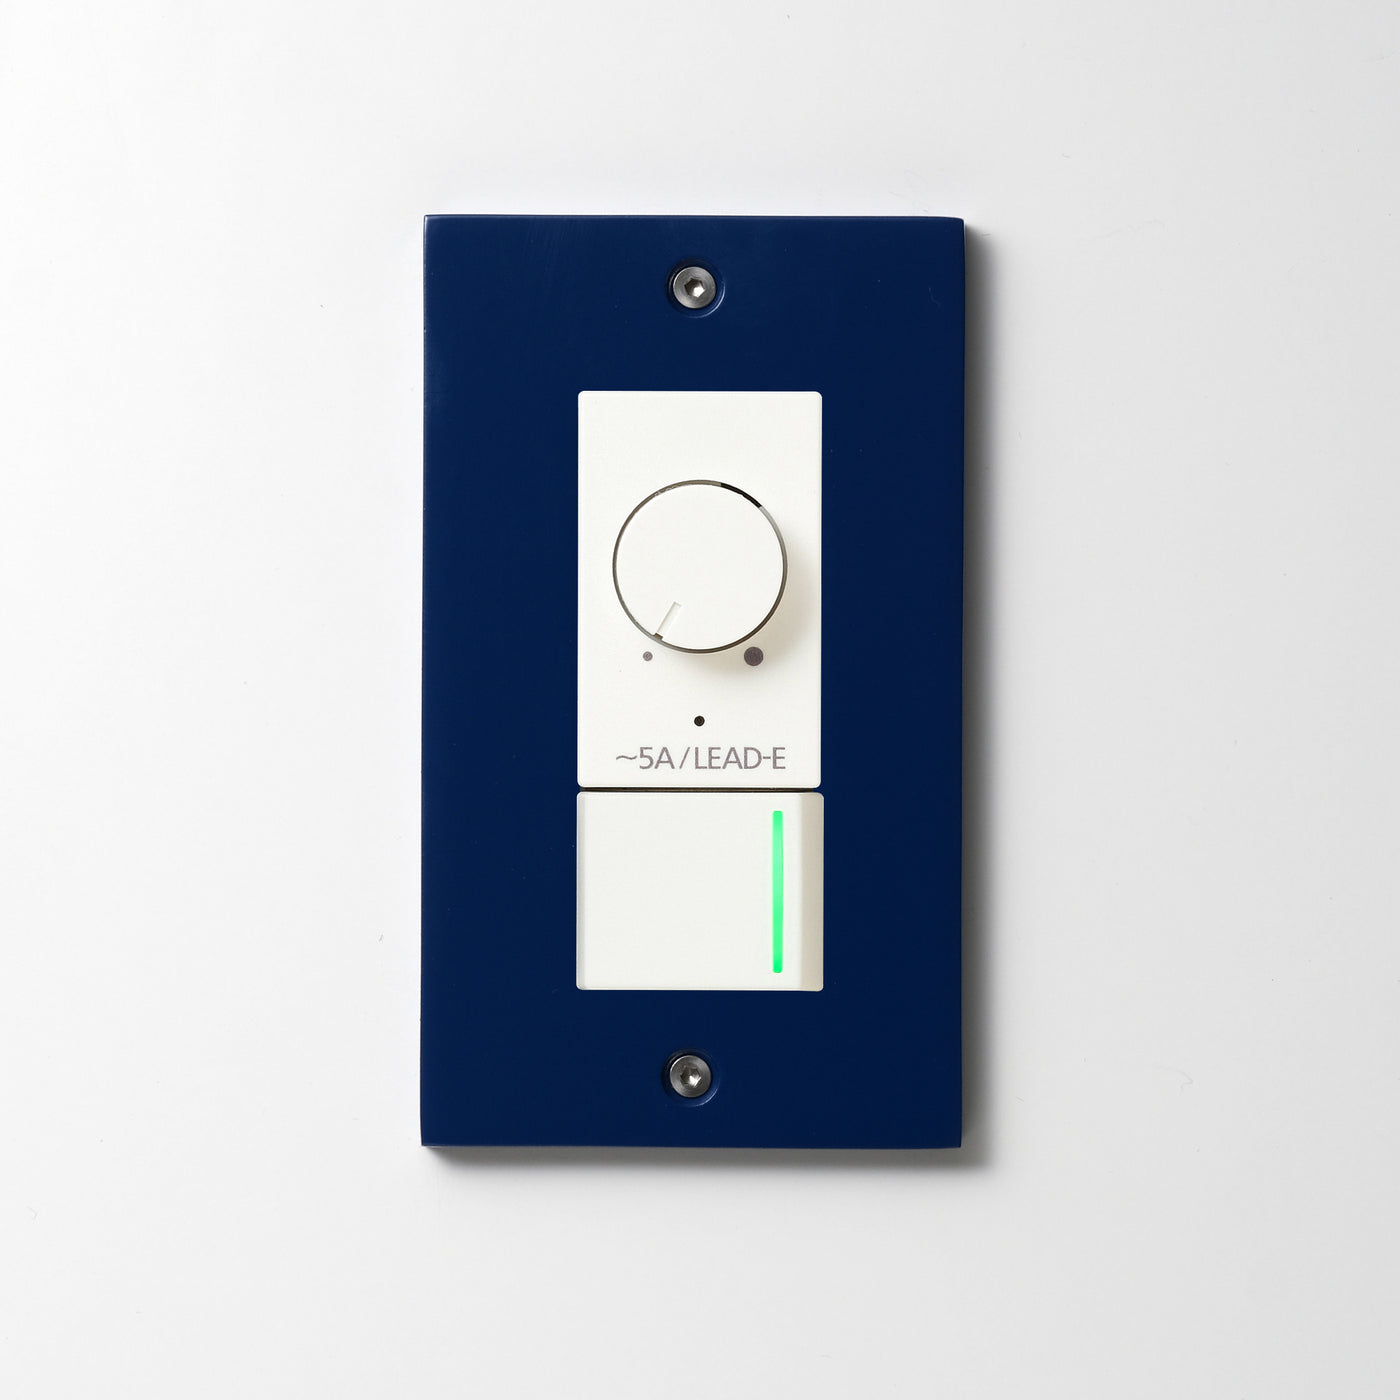 アルミダイキャスト（ブルー）プレート  <br>+ NK 正位相制御方式ライトコントロール＋片切、3路ガイドランプ（グリーン）スイッチ　 ホワイト